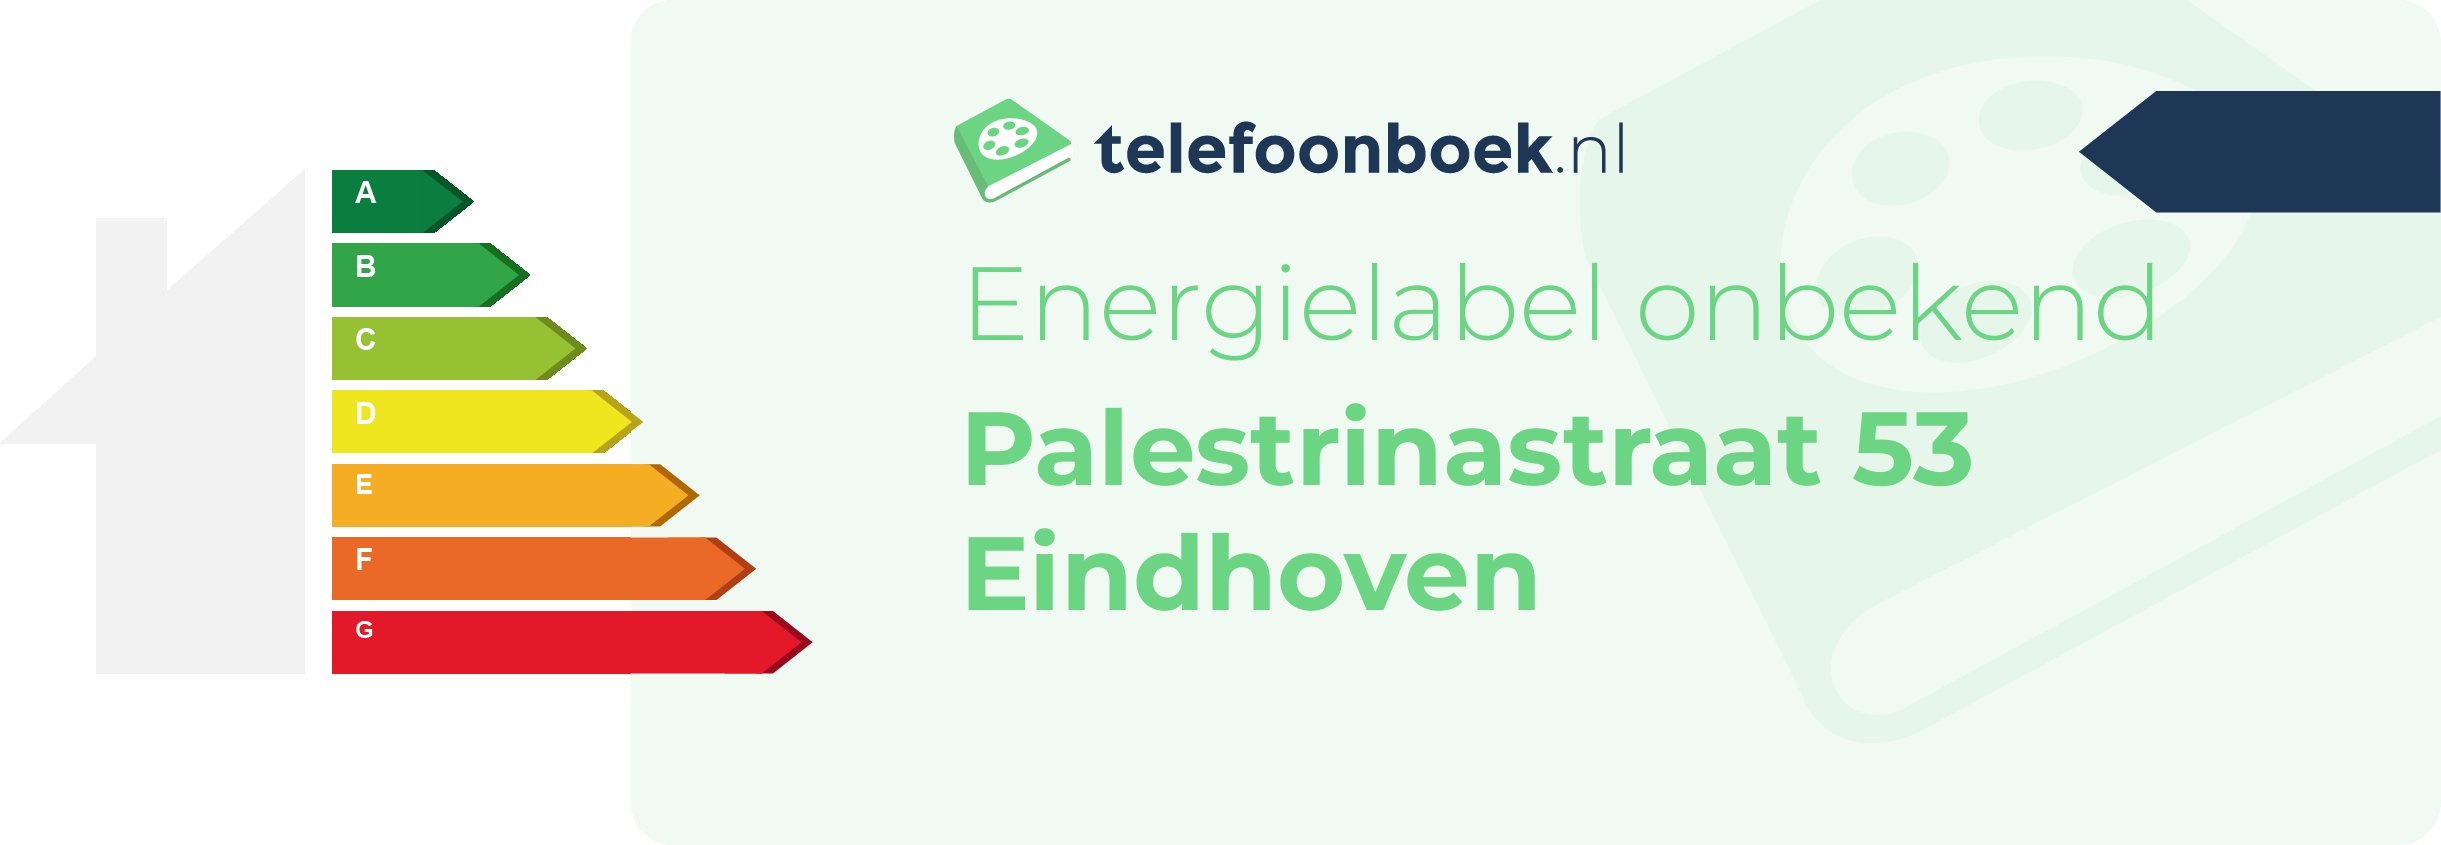 Energielabel Palestrinastraat 53 Eindhoven